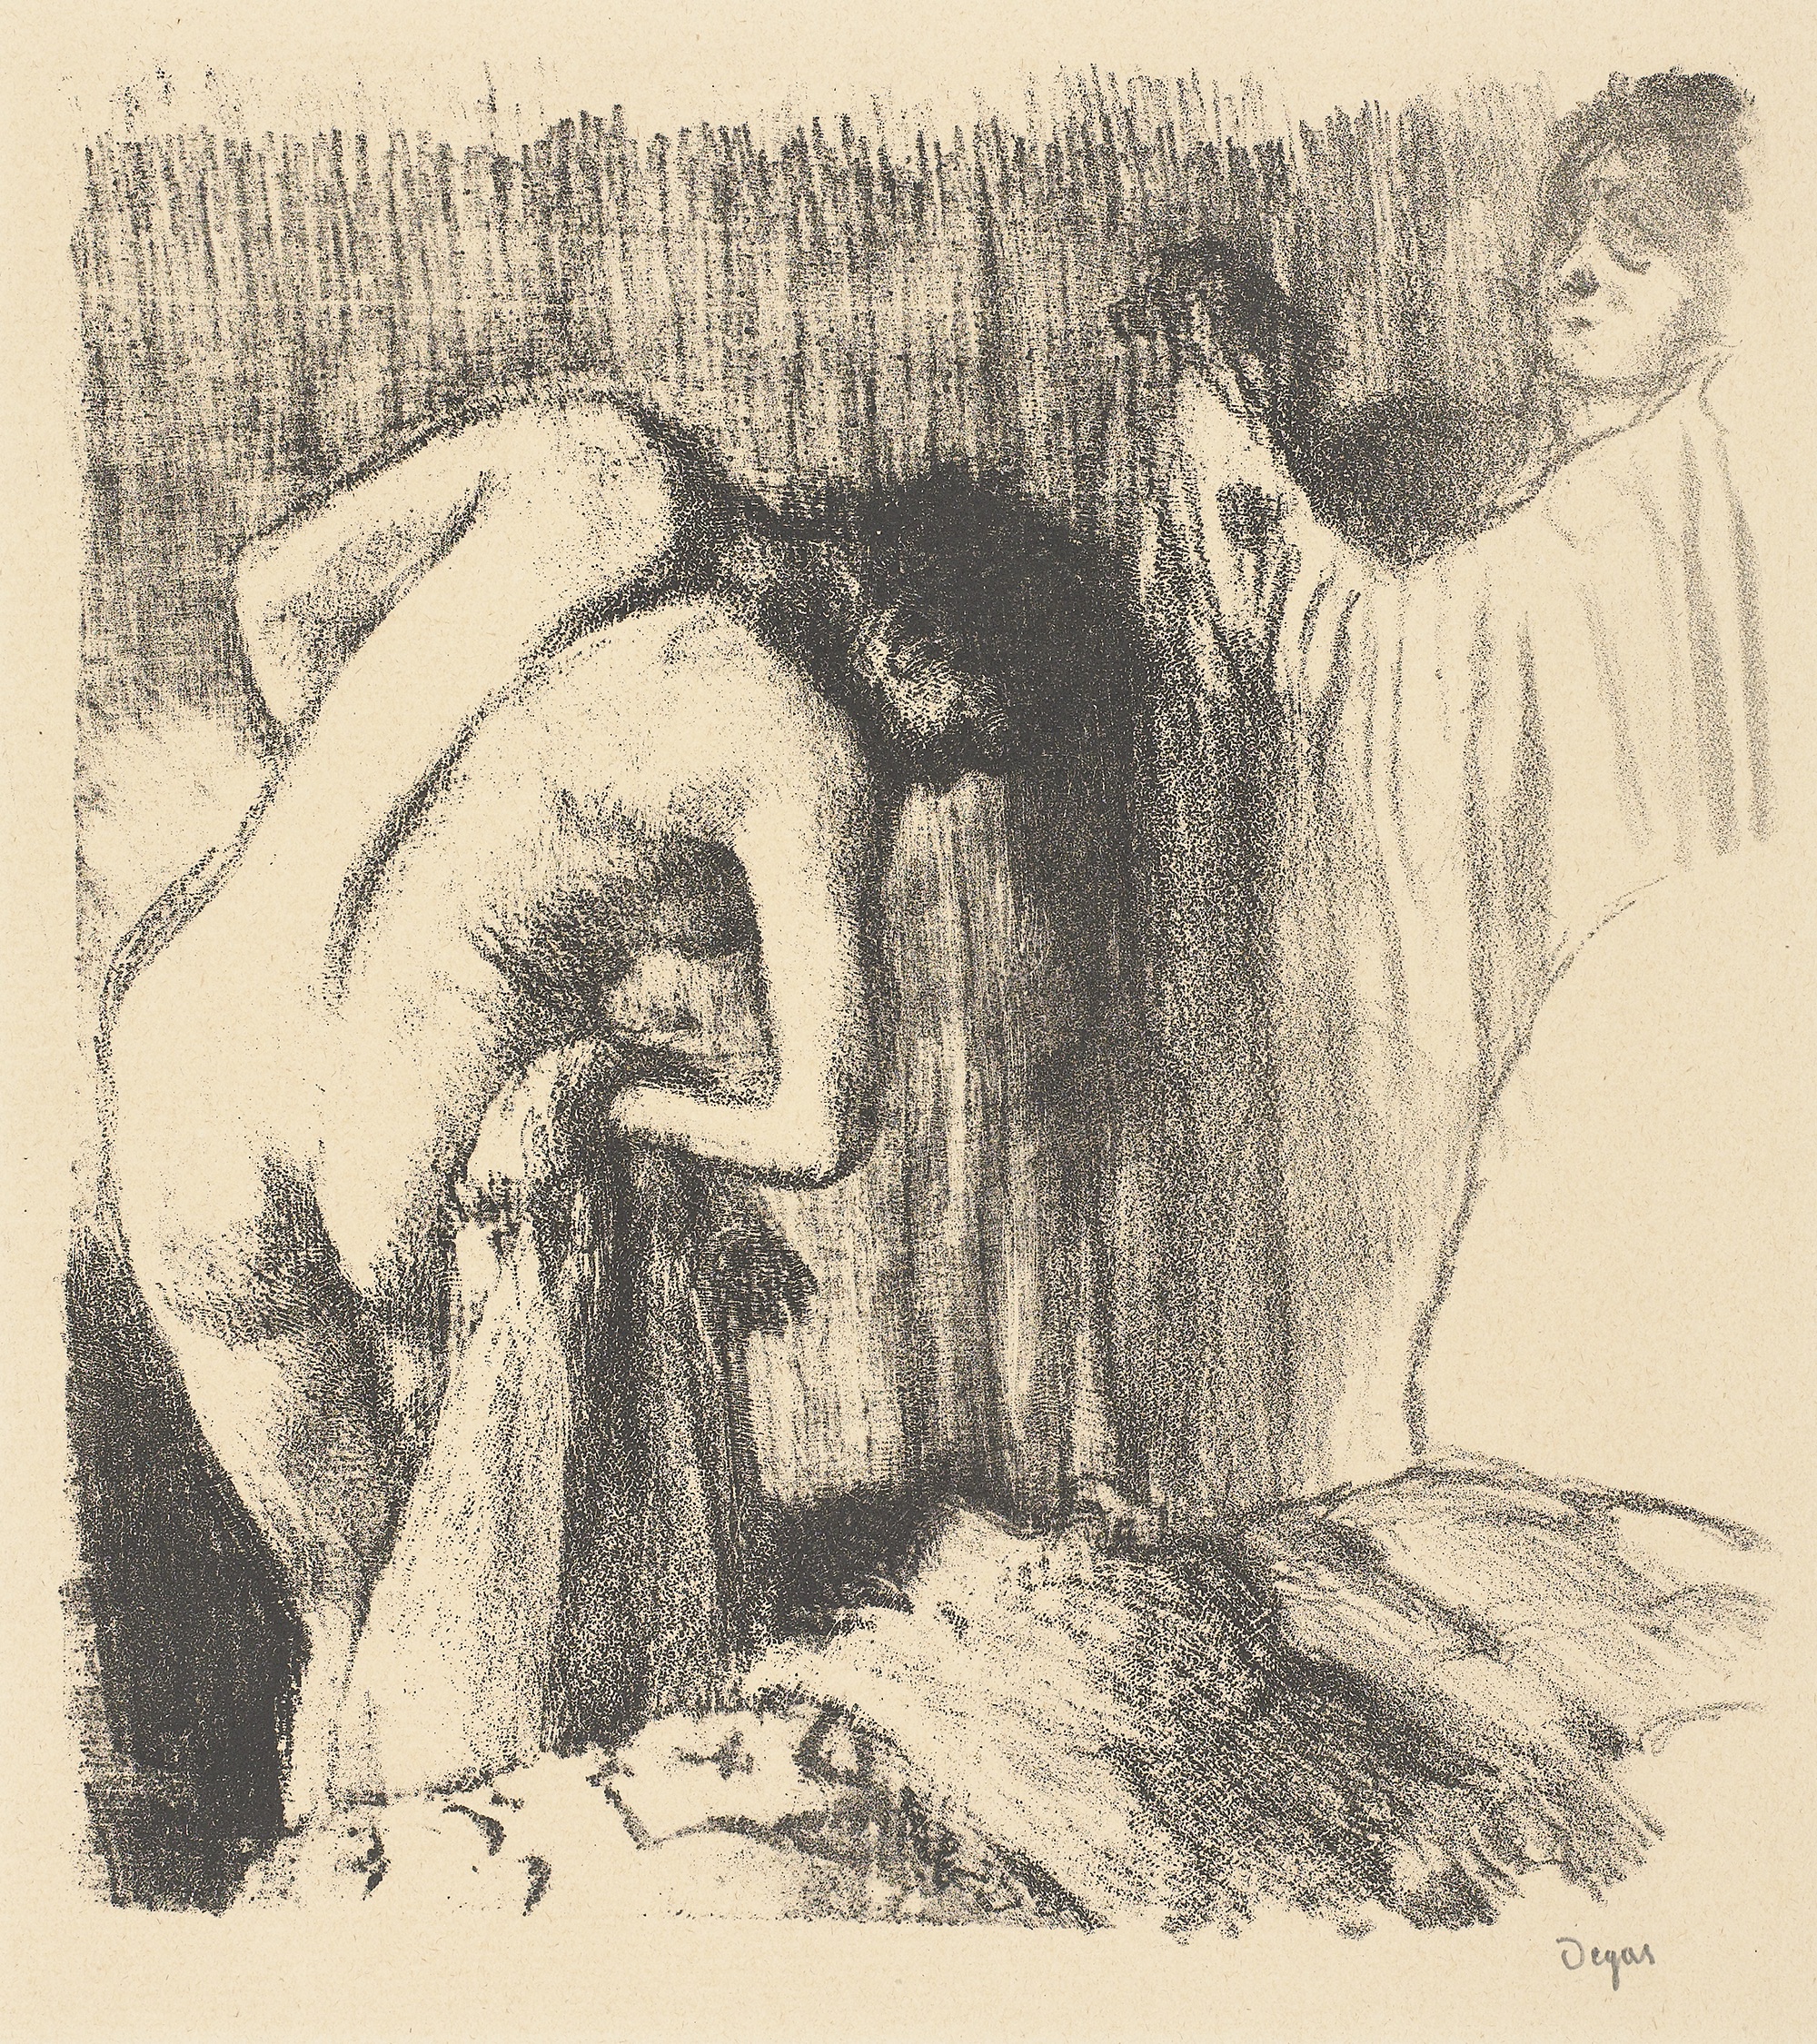 Femme se séchant après le bain by Edgar Degas - 1891-1892 Rembrandthuis